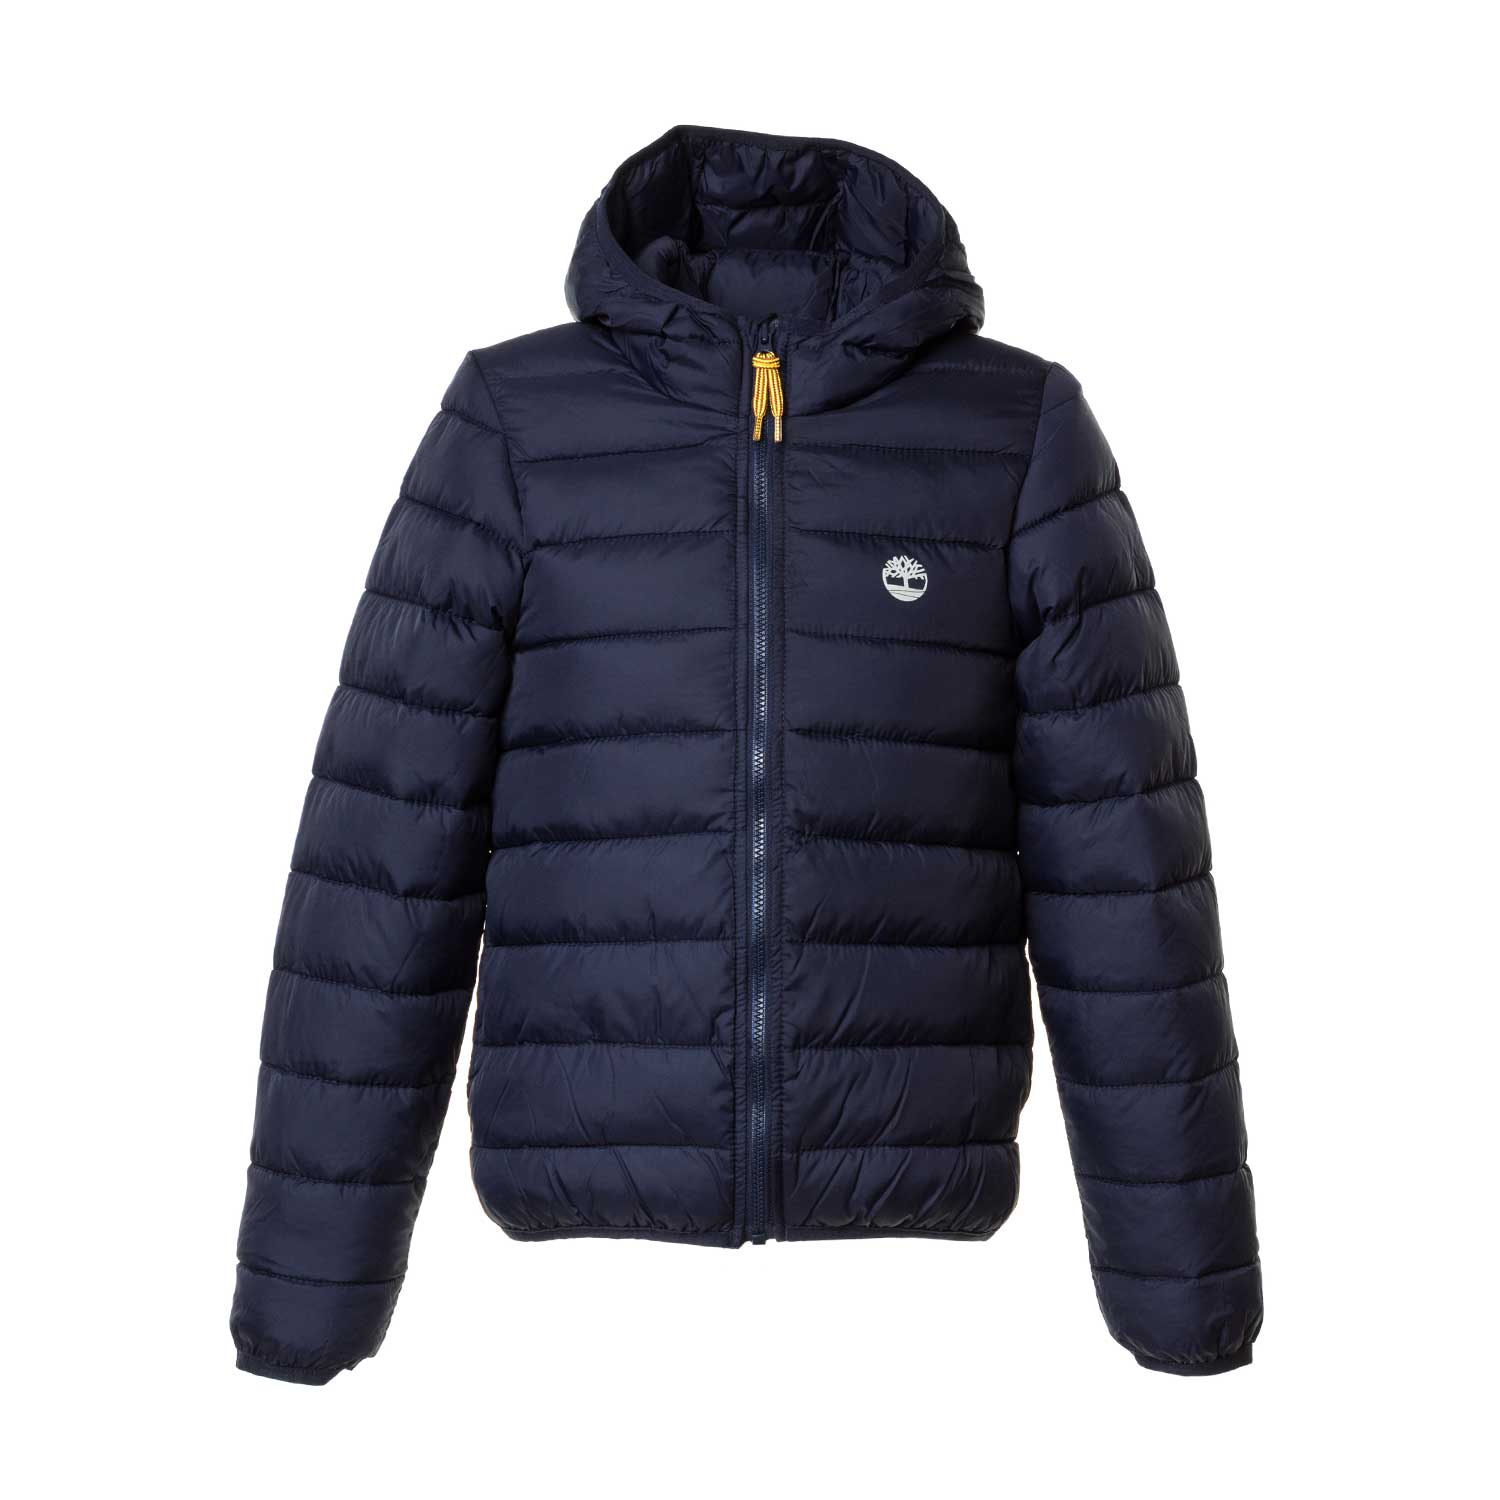 timberland jacket 2018